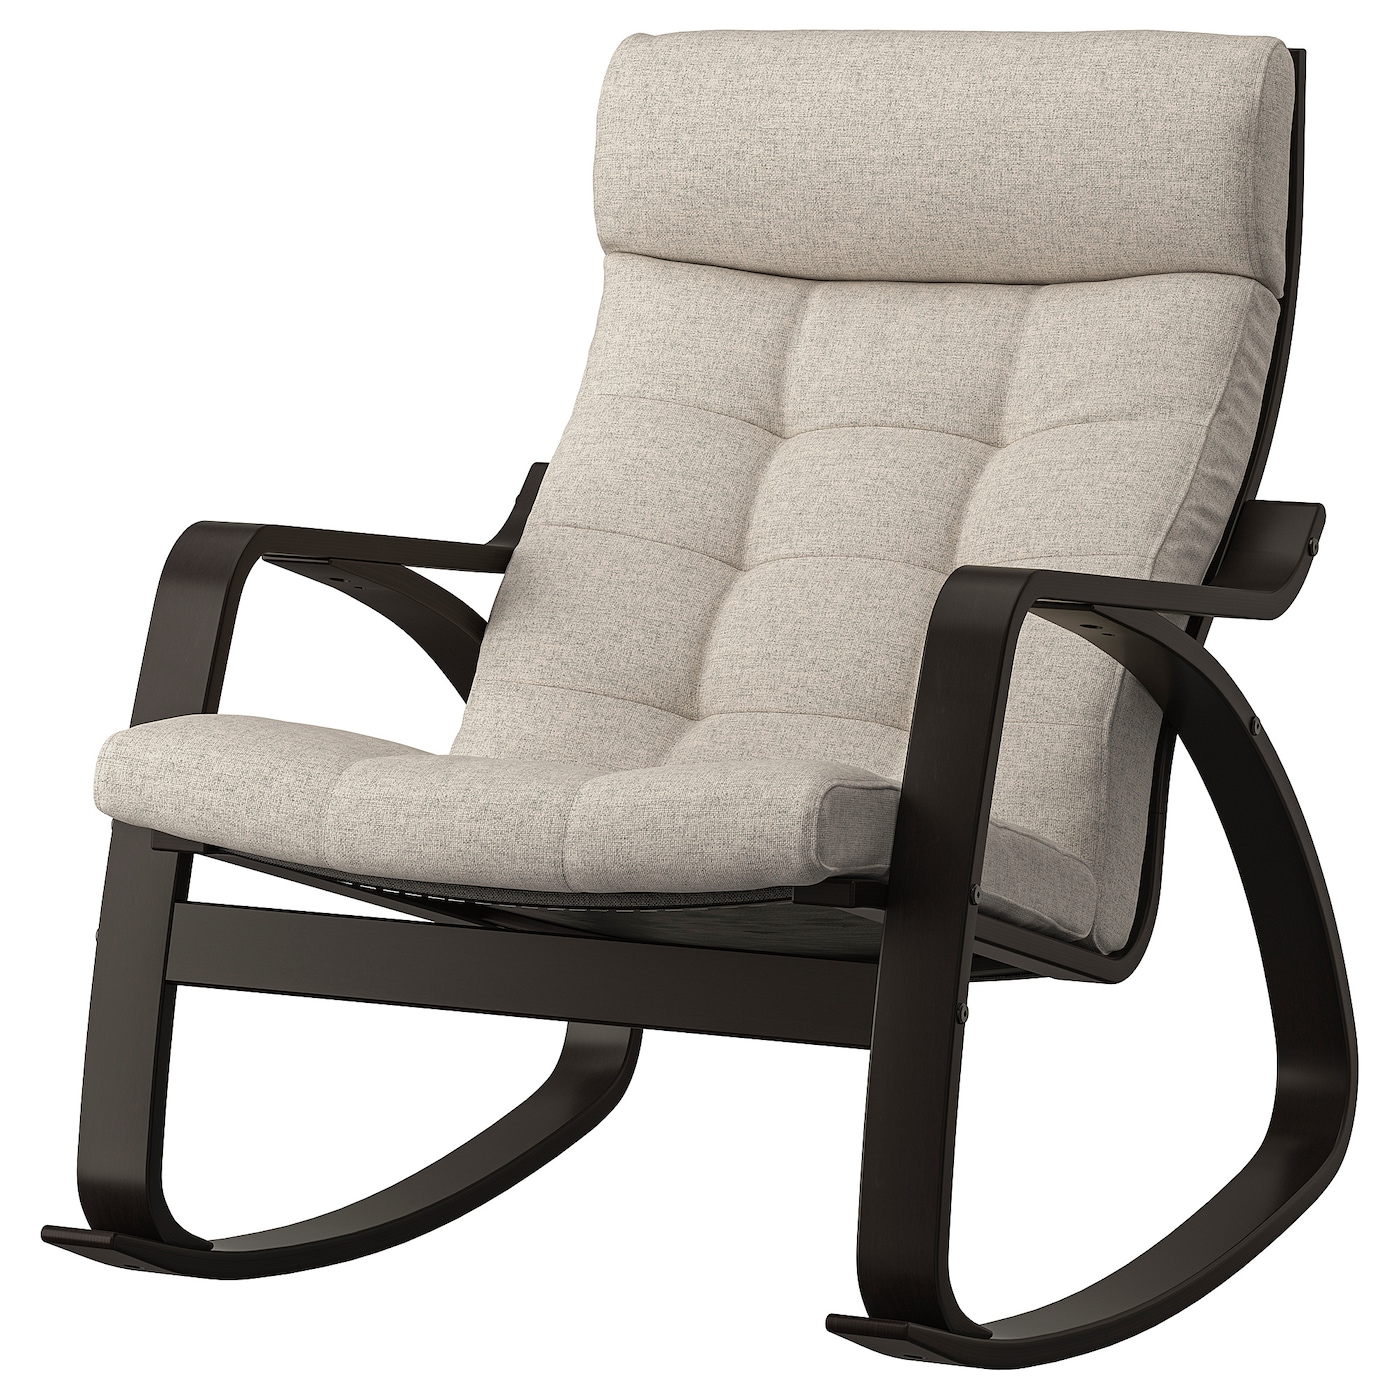 ПОЭНГ Кресло-качалка, черно-коричневый/Гуннаред бежевый POÄNG IKEA кресло качалка remington rocking сhair relaxing rm2026